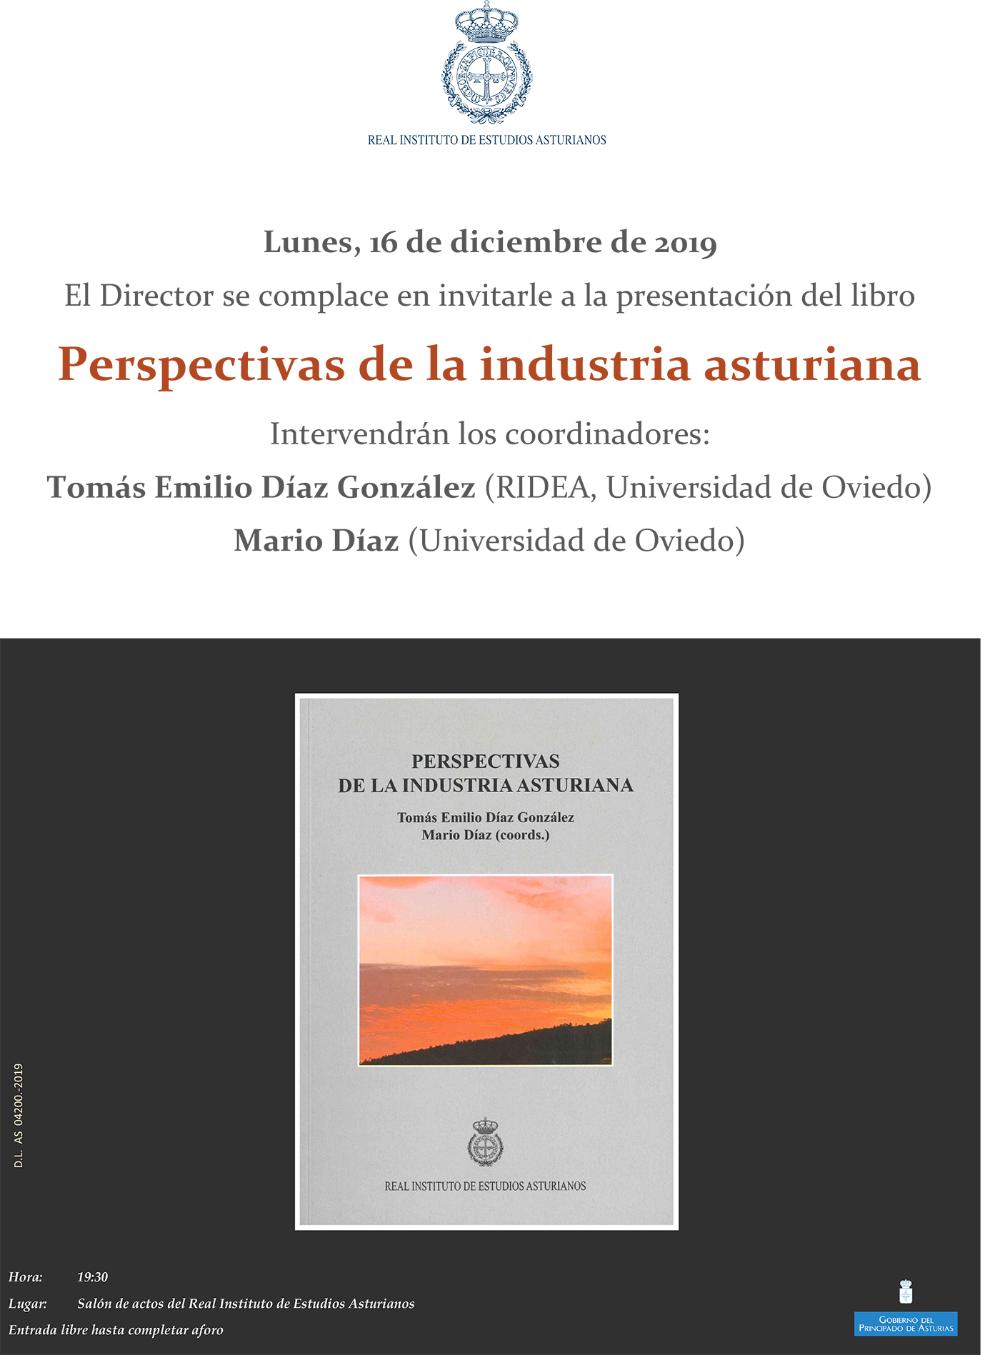 Imagen - Presentación del libro Perspectivas de la industria asturiana.